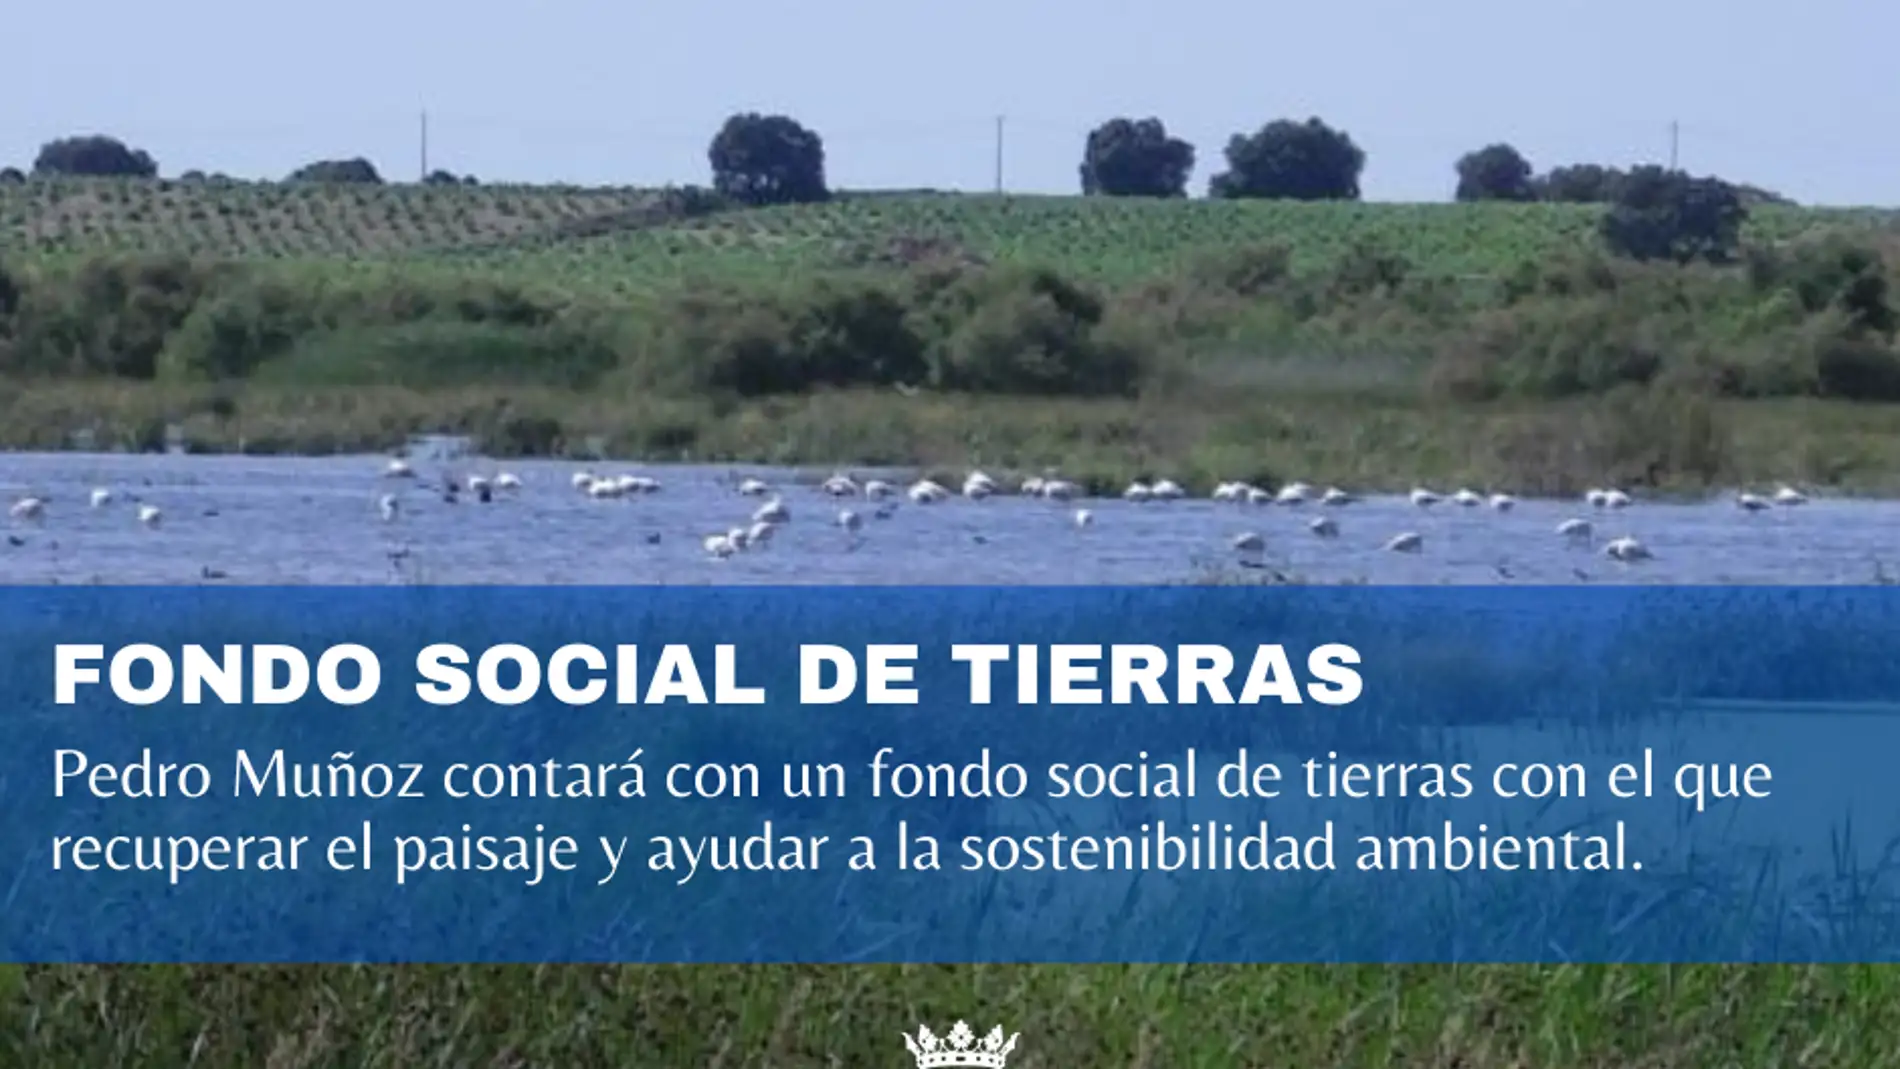 Pedro Muñoz contará con un fondo social de tierras con el que recuperar el paisaje y ayudar a la sostenibilidad ambiental